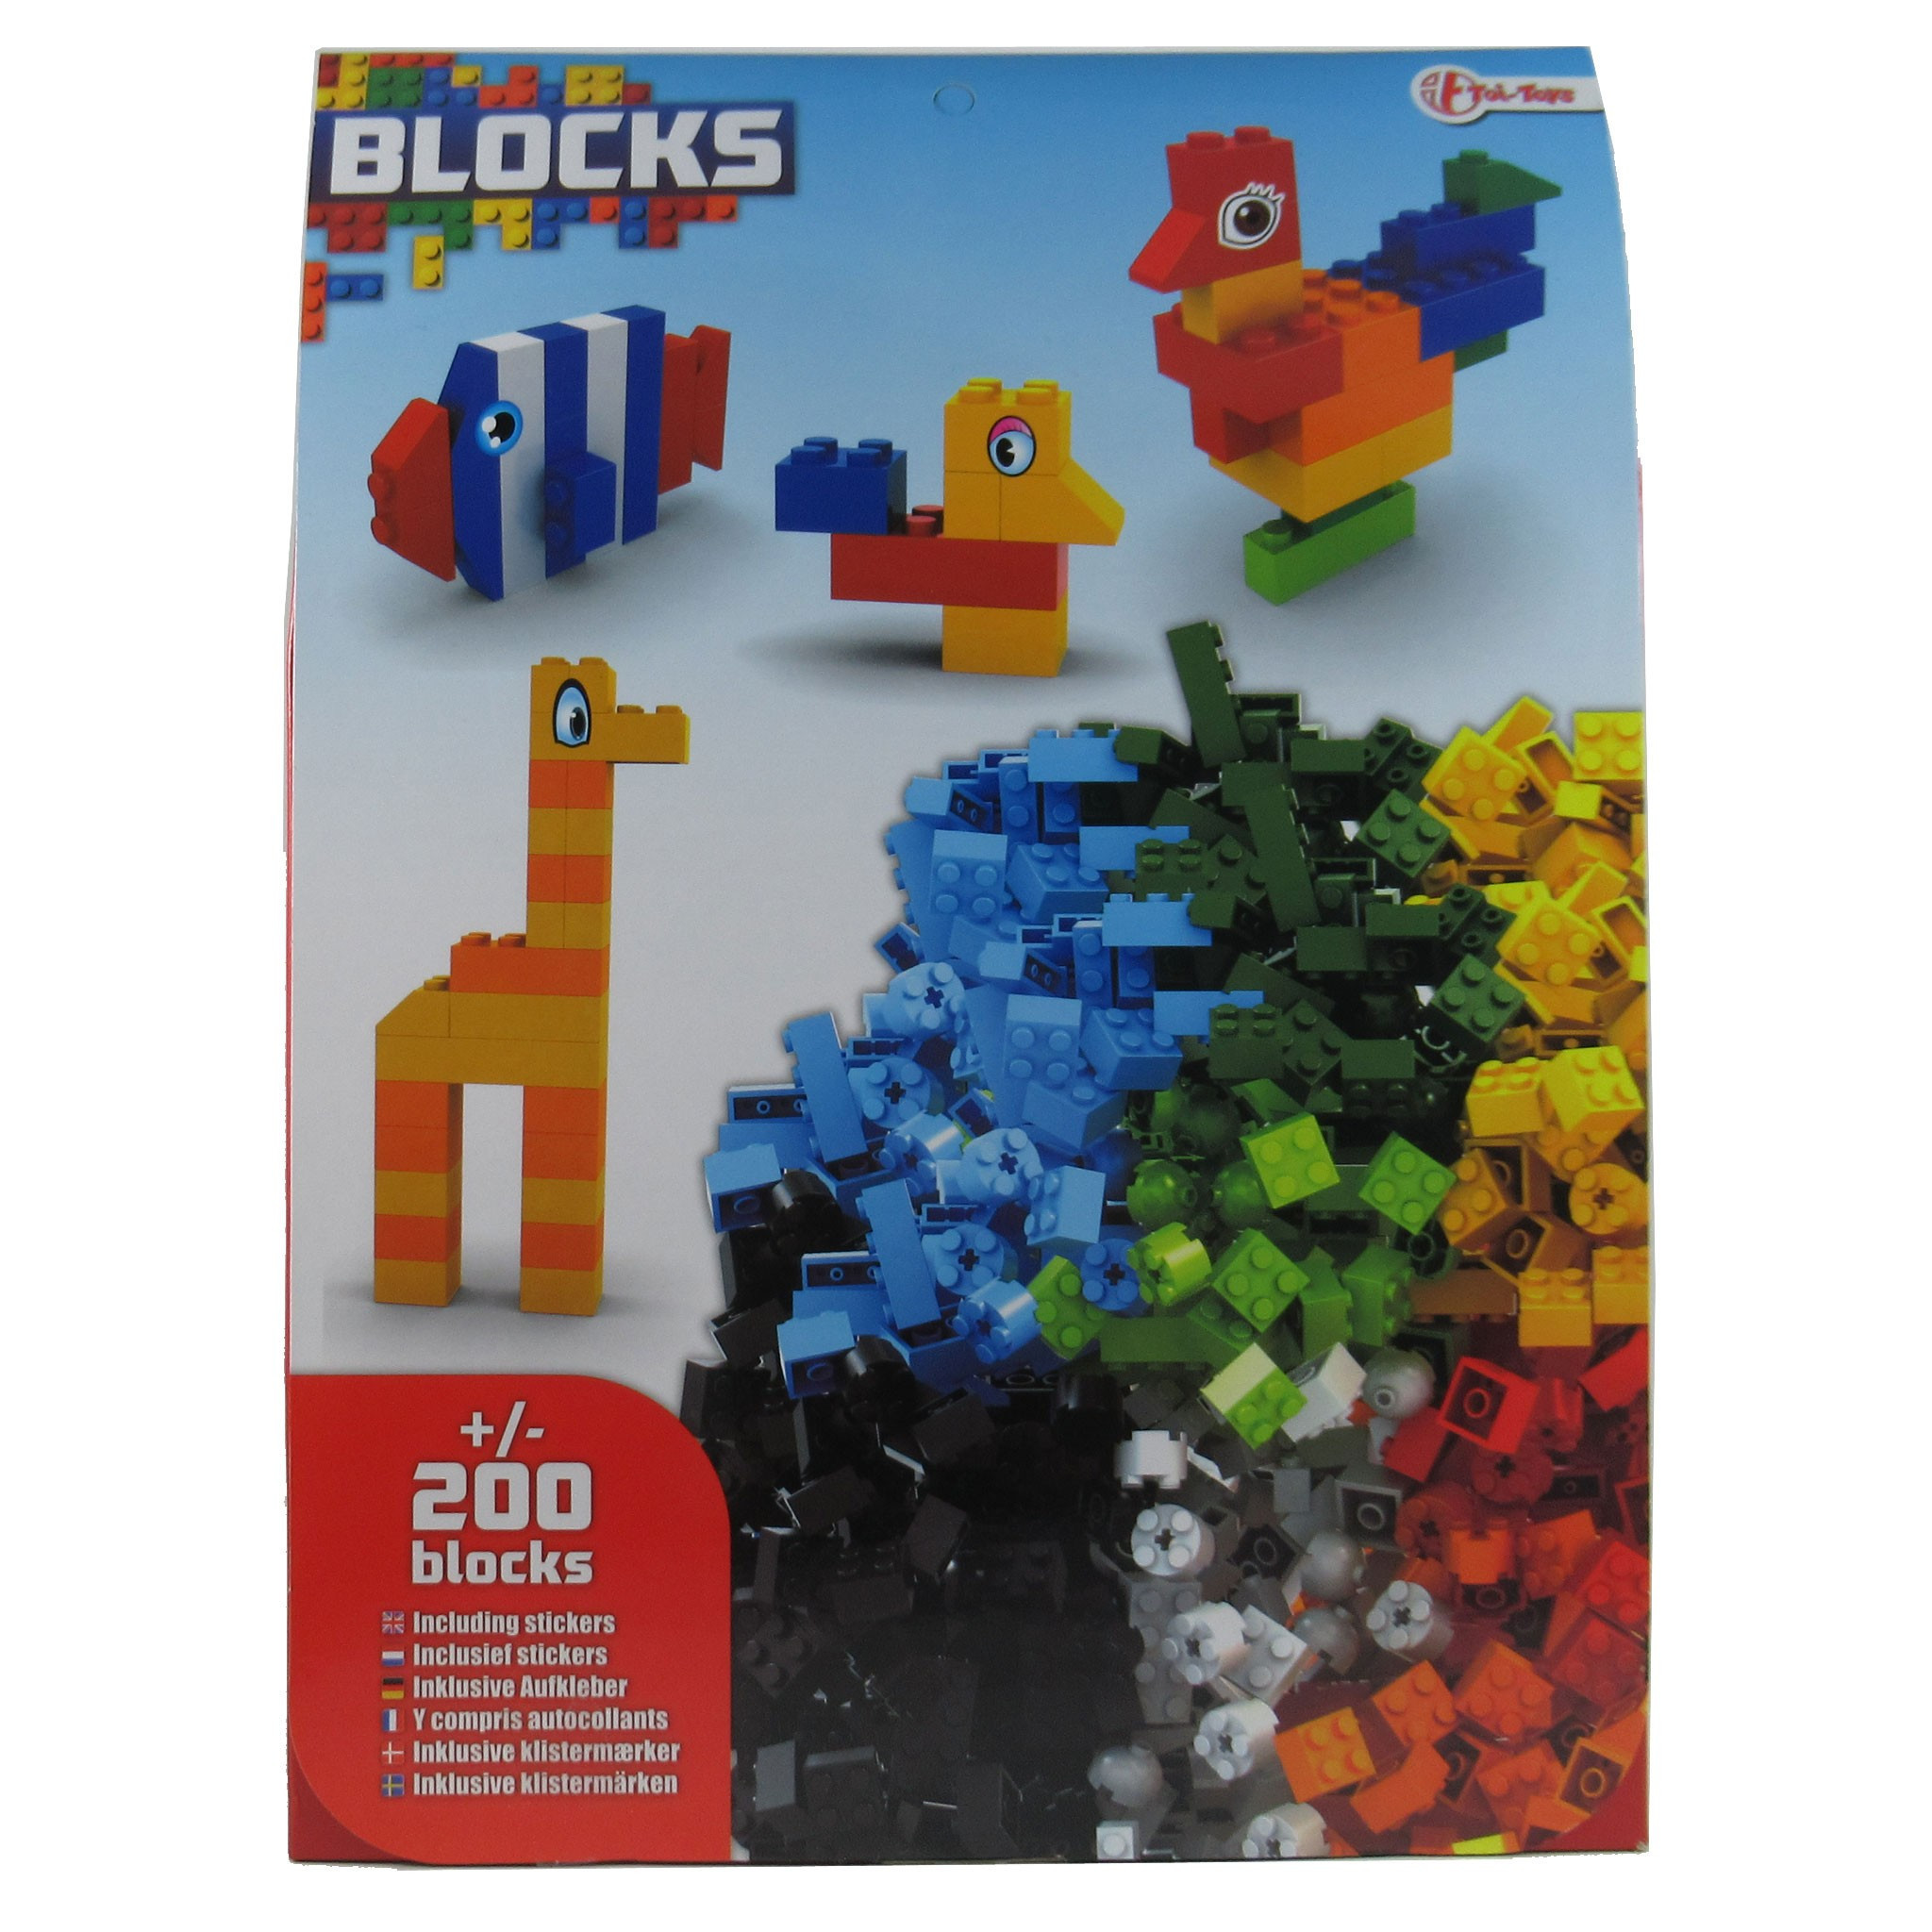 200 BLOCKS Bausteine - kompatibel mit Bausteinen anderen großen Herstellern